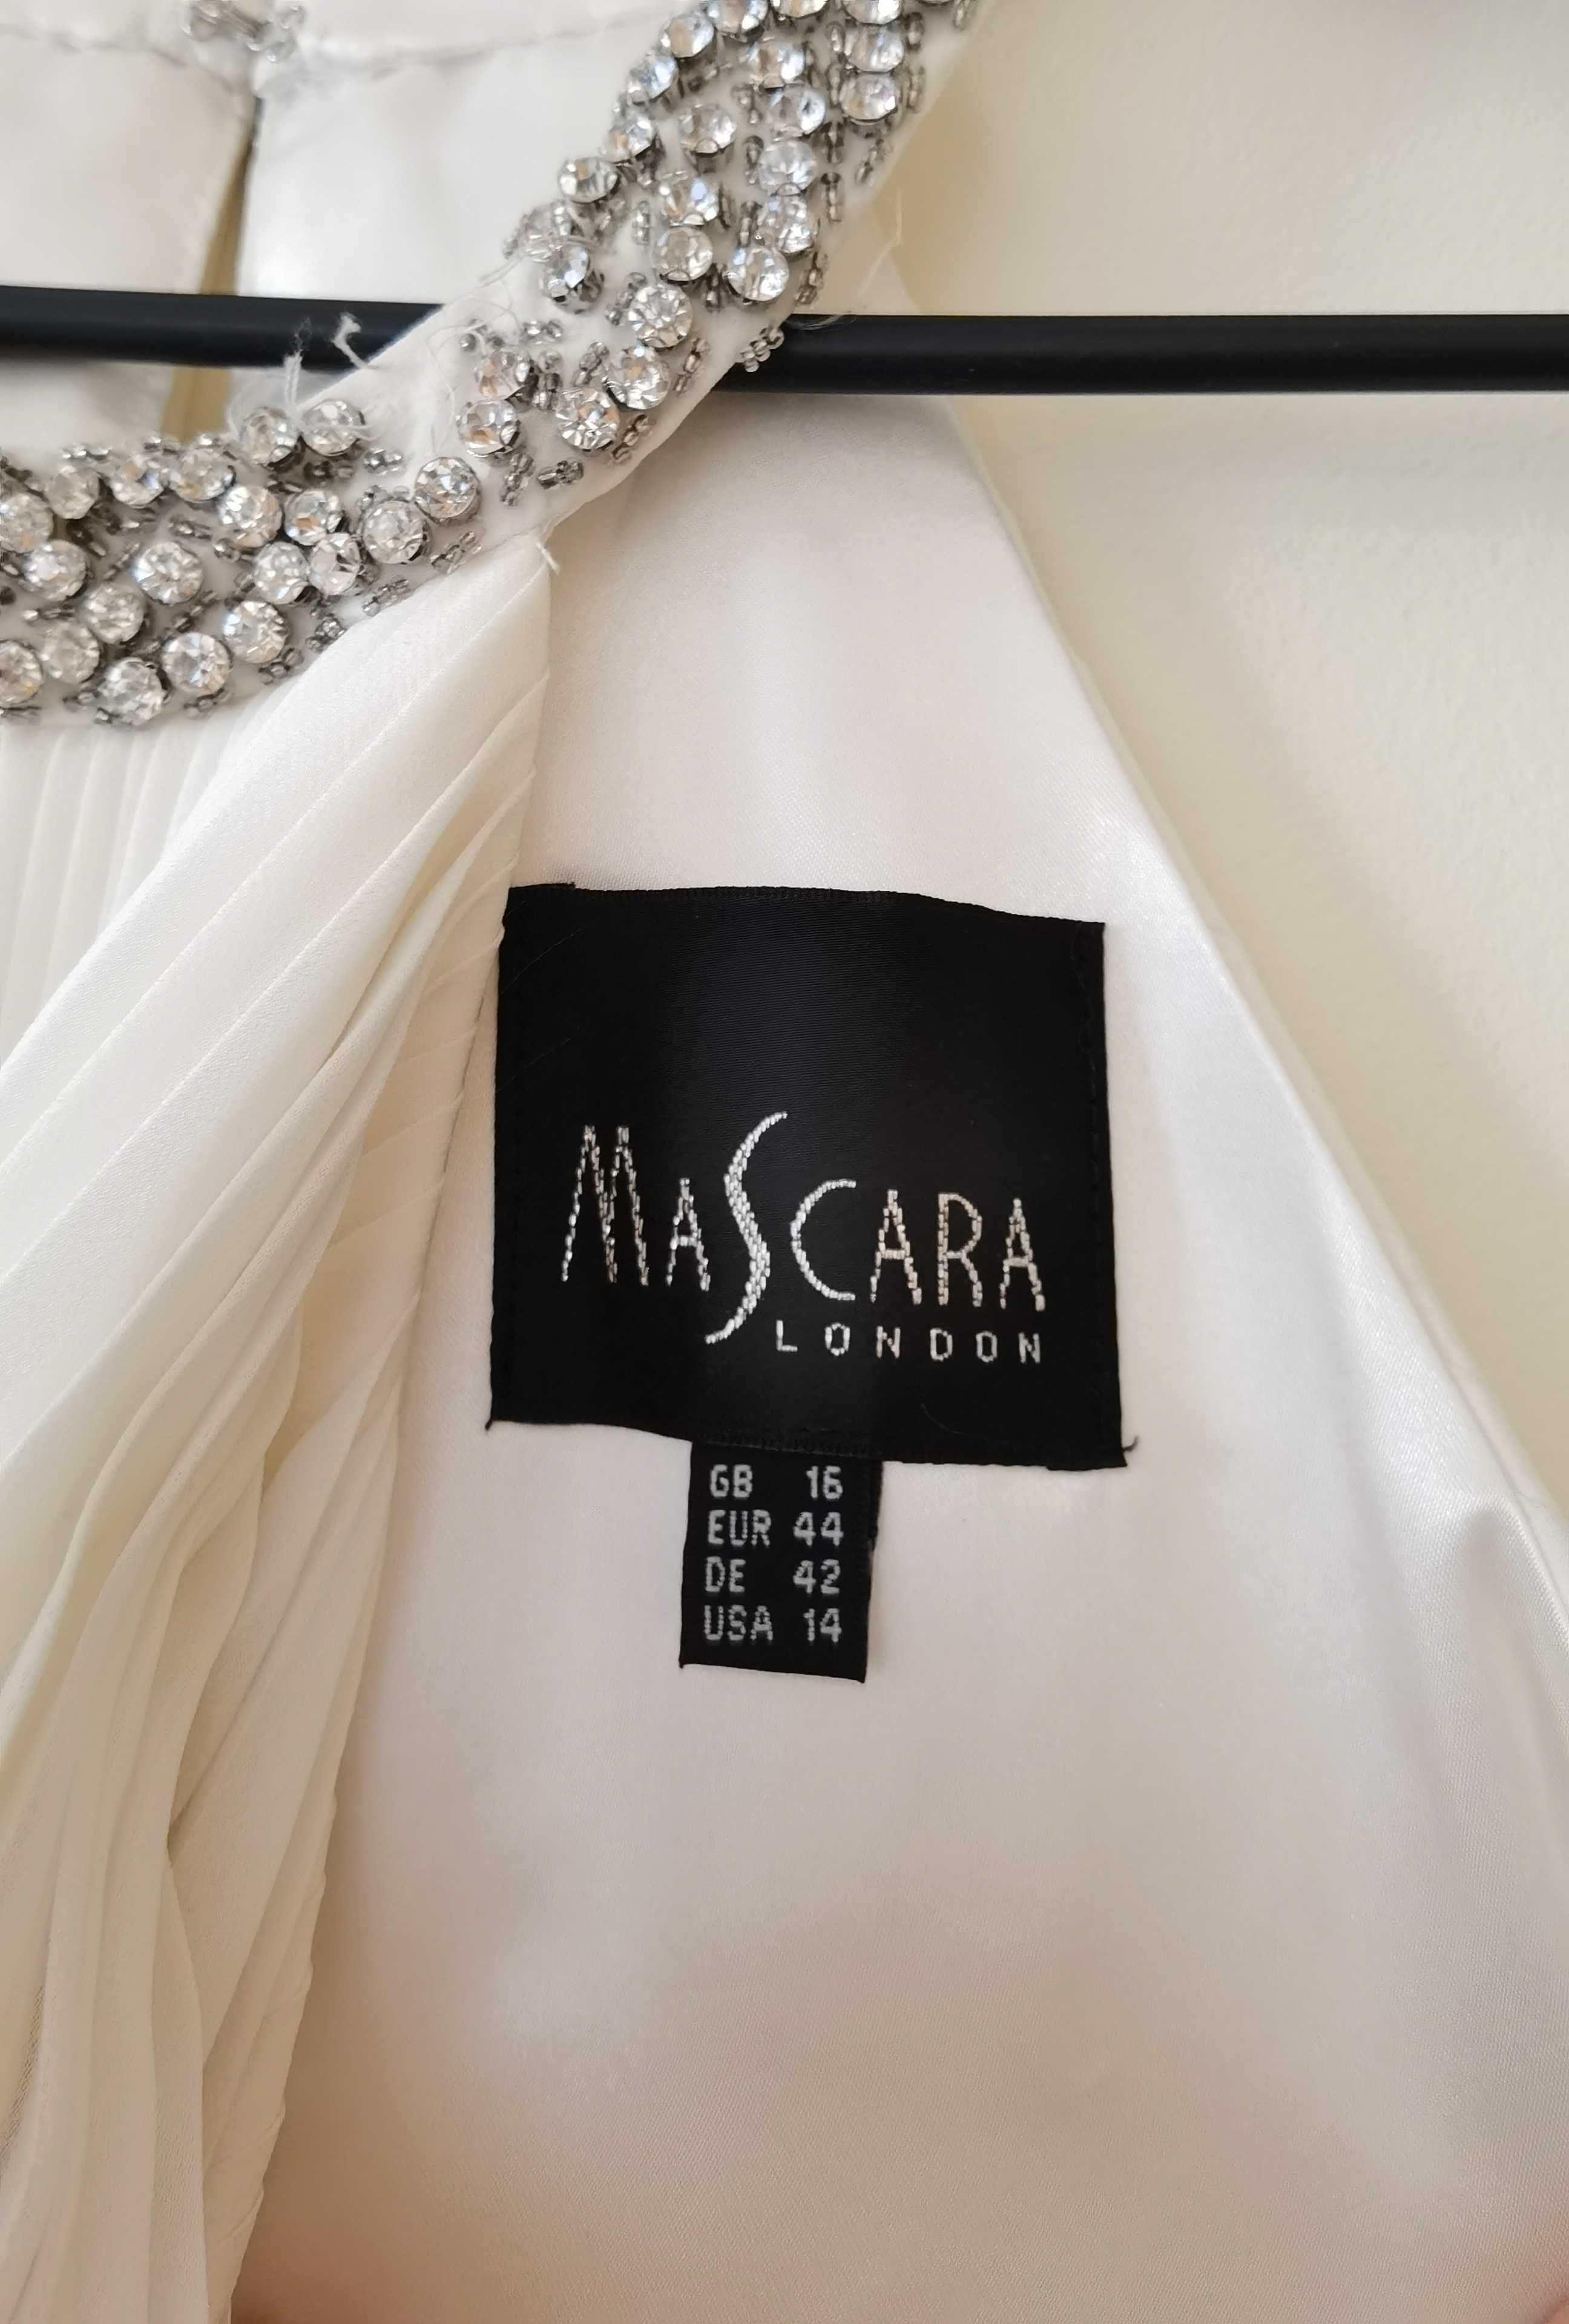 Biała elegancka sukienka midi Mascara 42 44 suknia ślubna na poprawiny